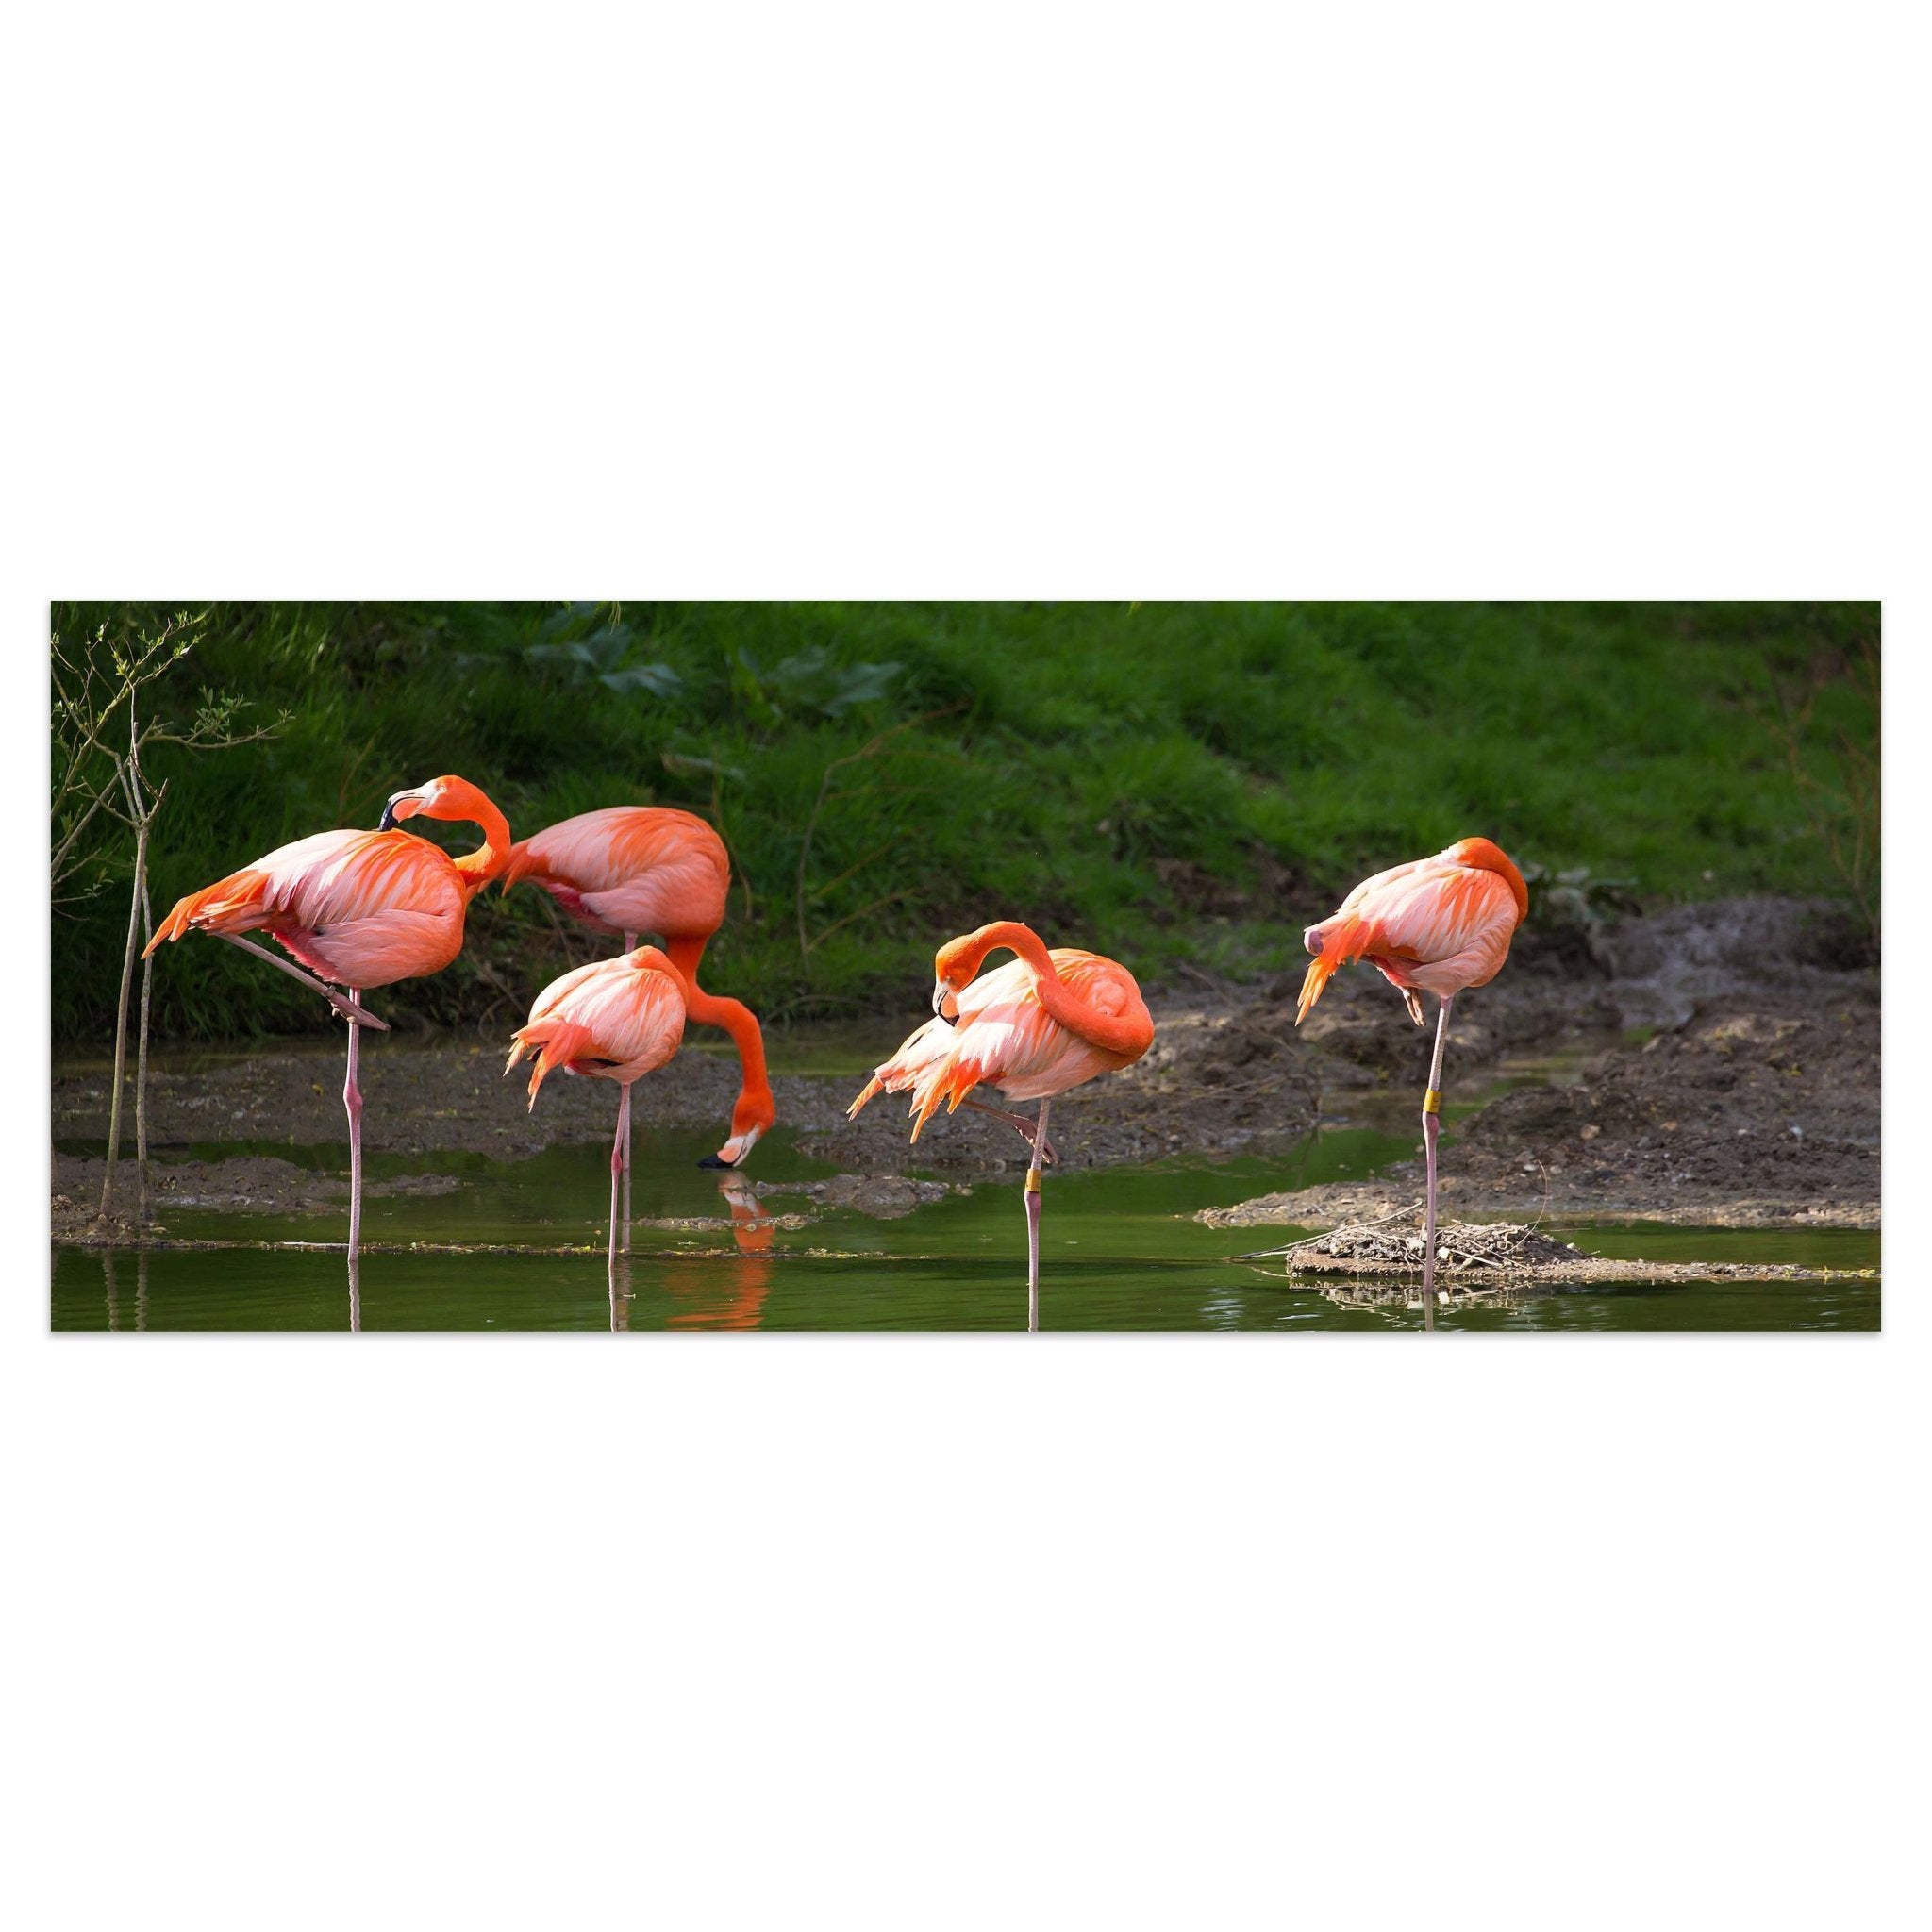 Leinwandbild Flamingos in einem Pool M1009 kaufen - Bild 1